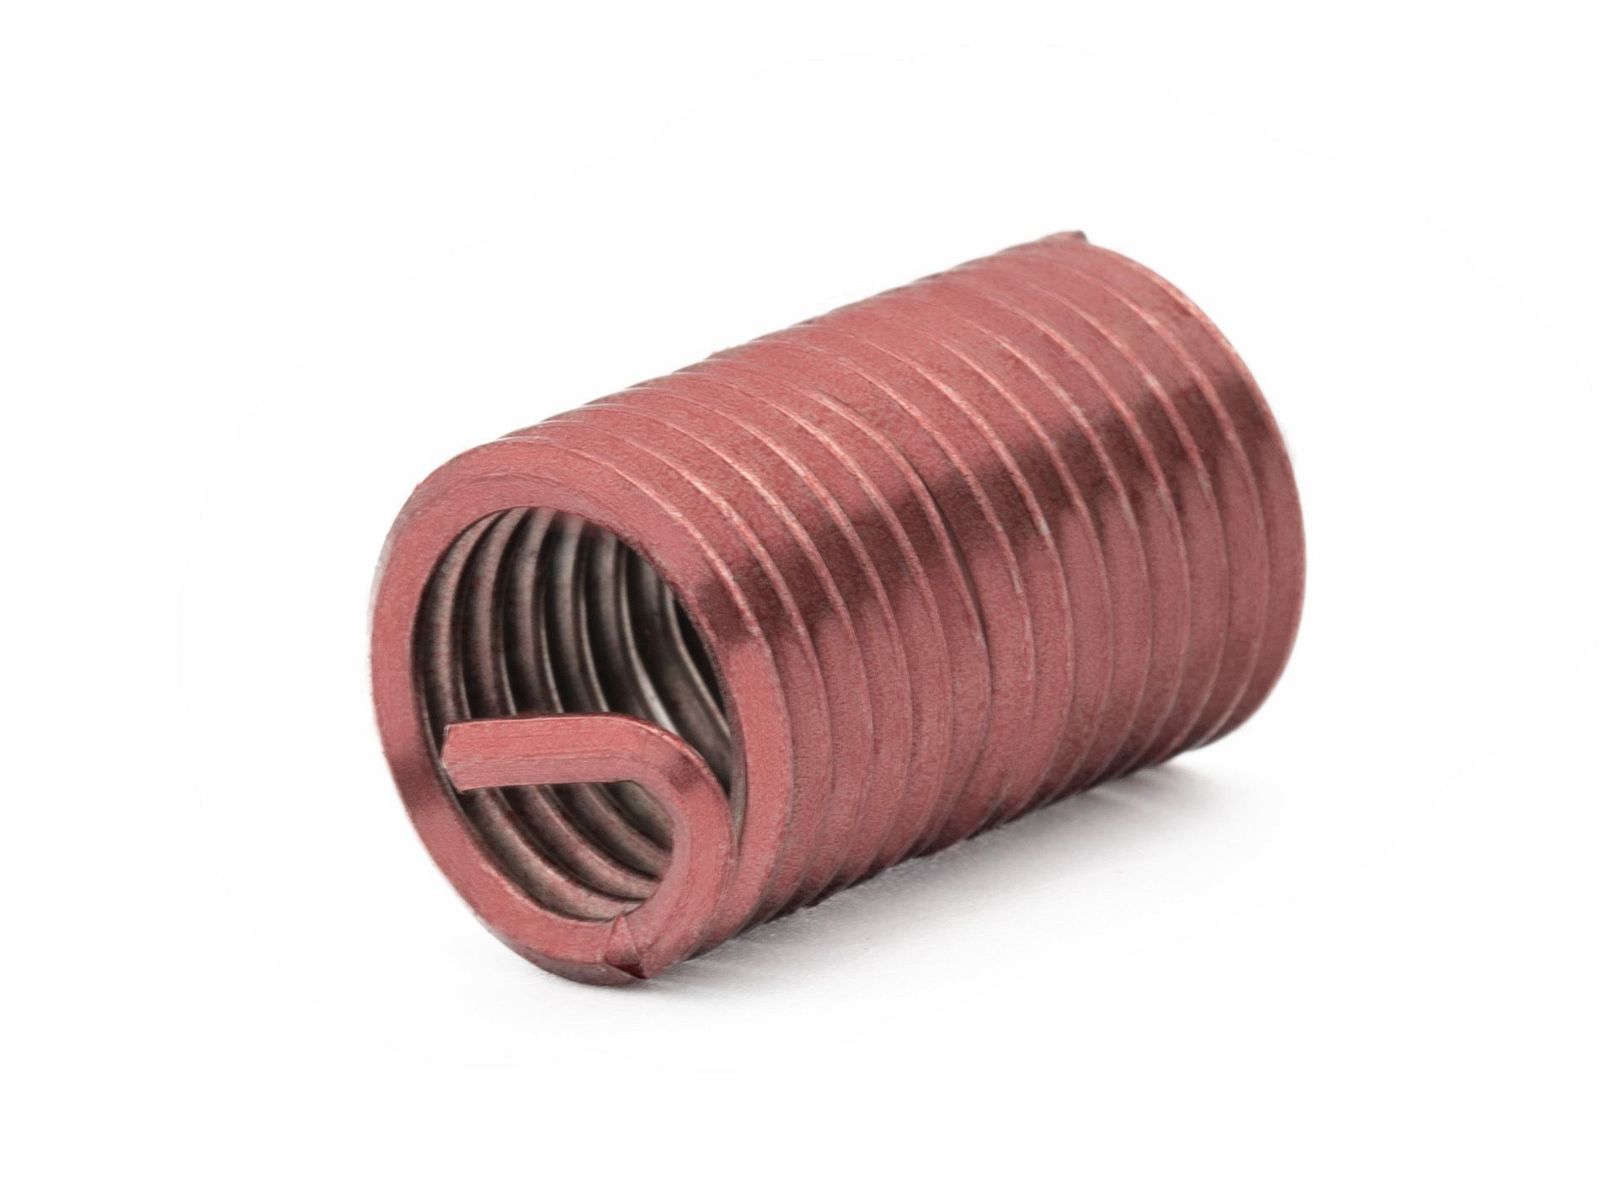 BaerCoil Wire Thread Inserts UNC 1/2 x 13 - 2.5 D (31.75 mm) - screw grip (screw locking) - 100 pcs.